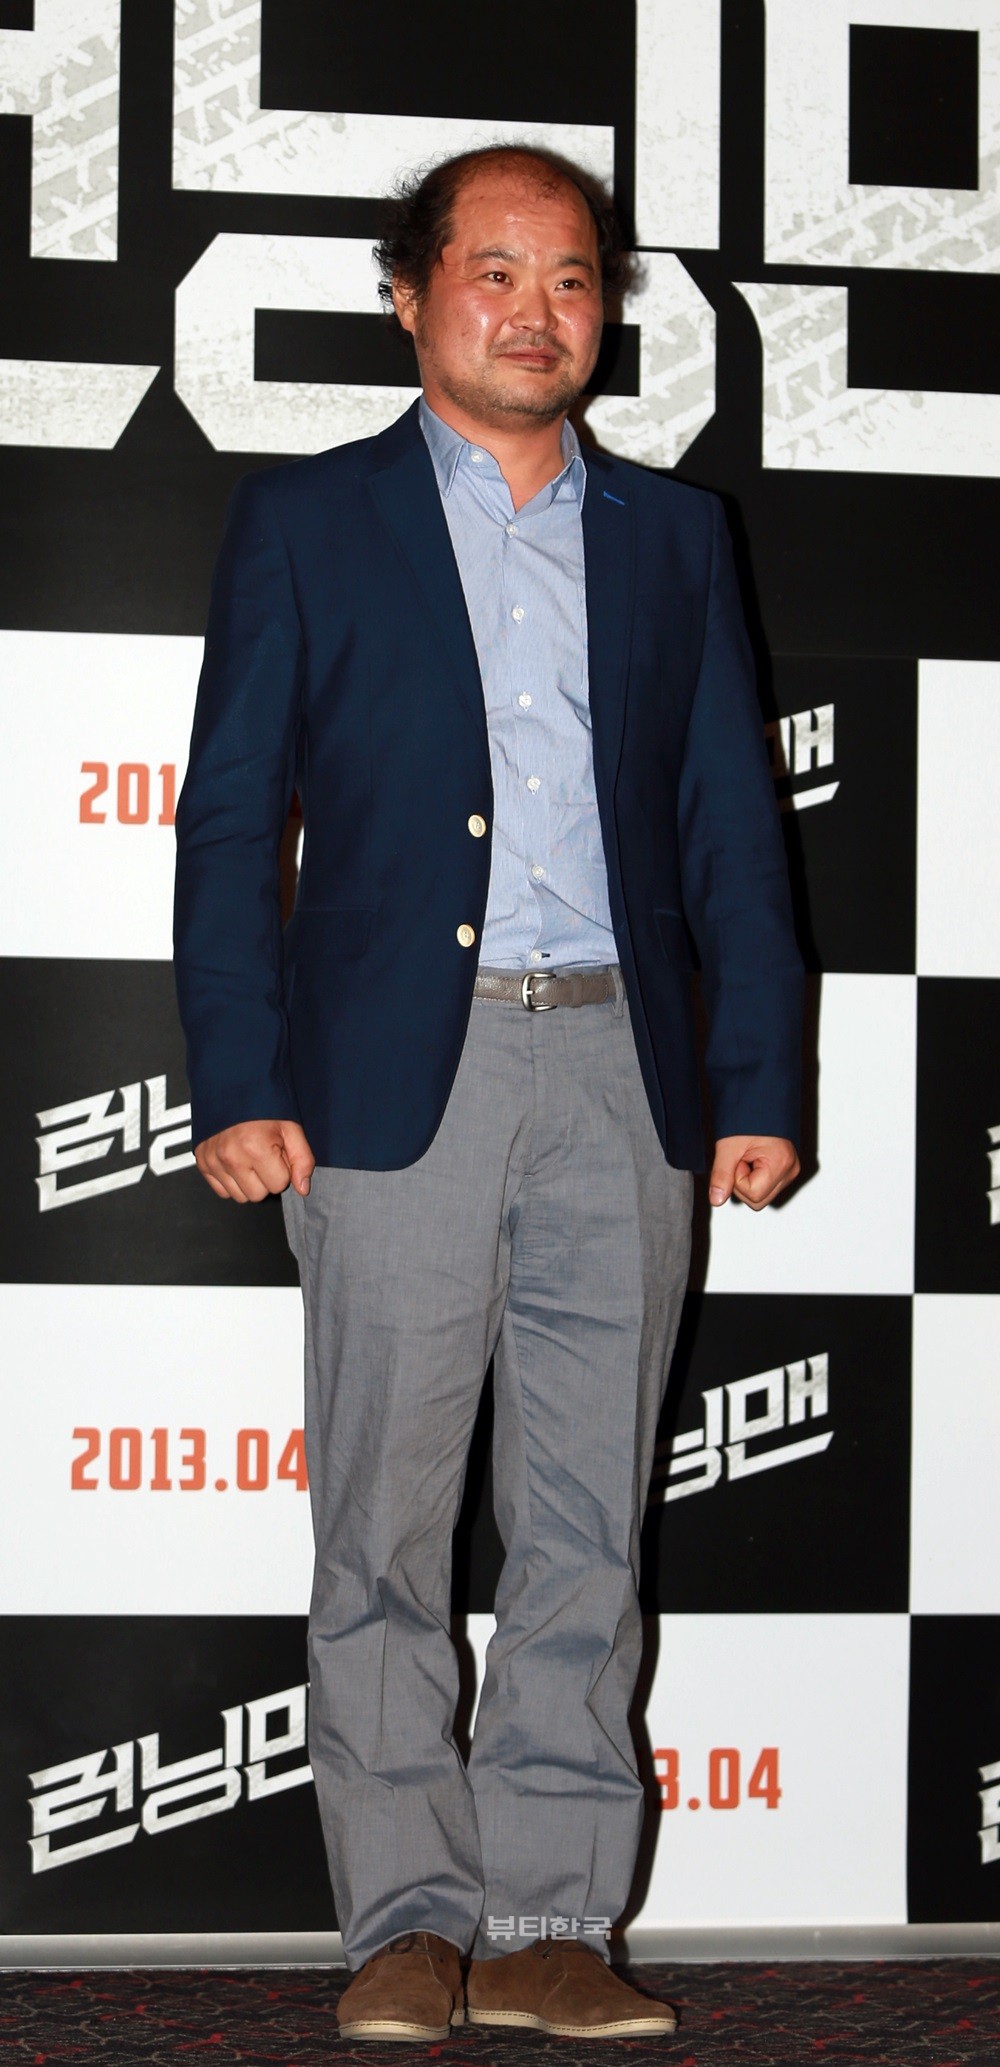 [영화 런닝맨]형사의 직업을 가진 아버지를 연기했다는 배우 김상호